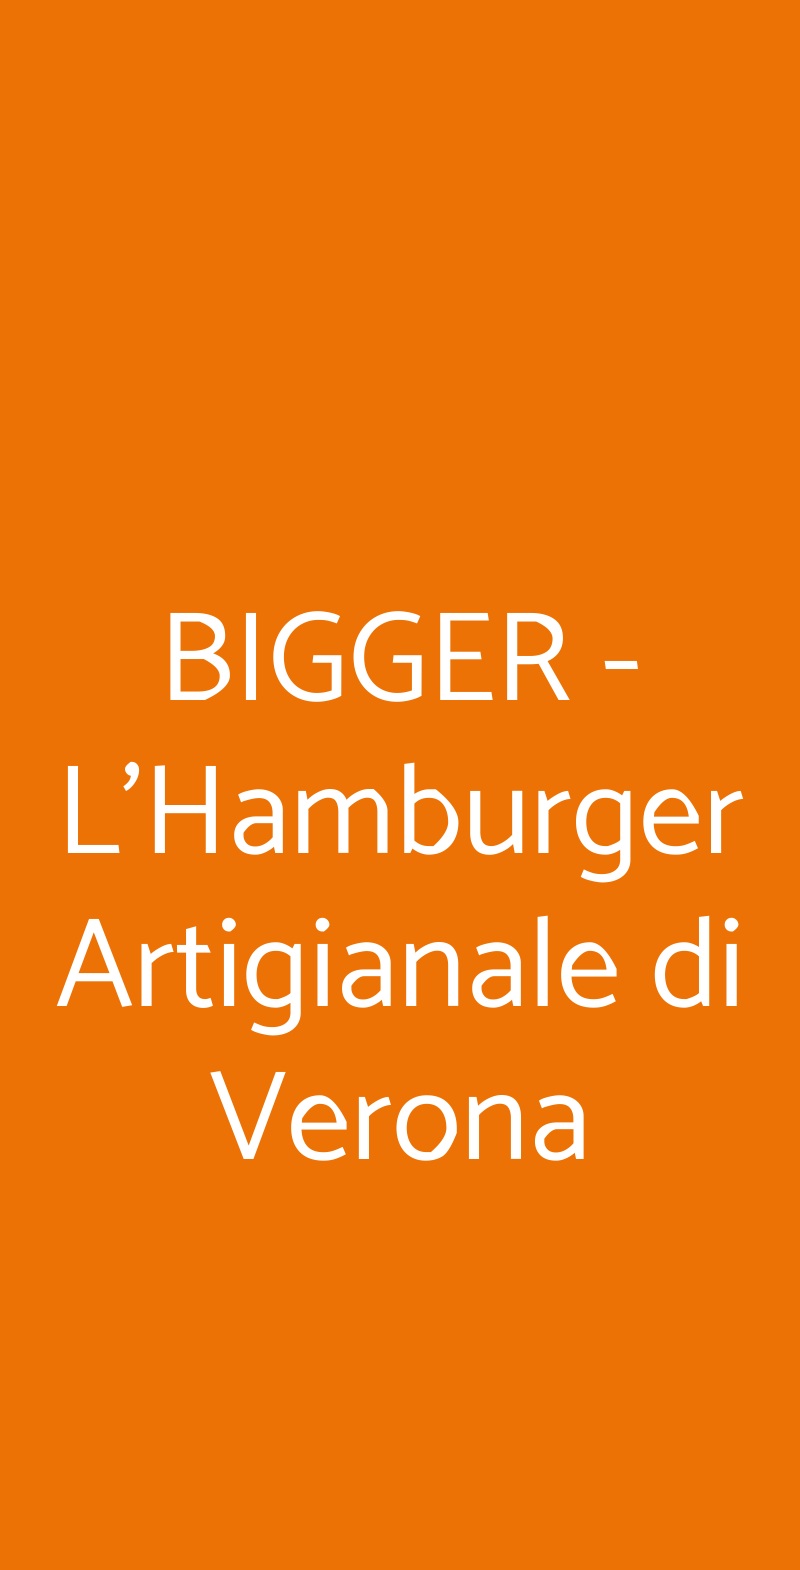 BIGGER - L'Hamburger Artigianale di Verona Verona menù 1 pagina